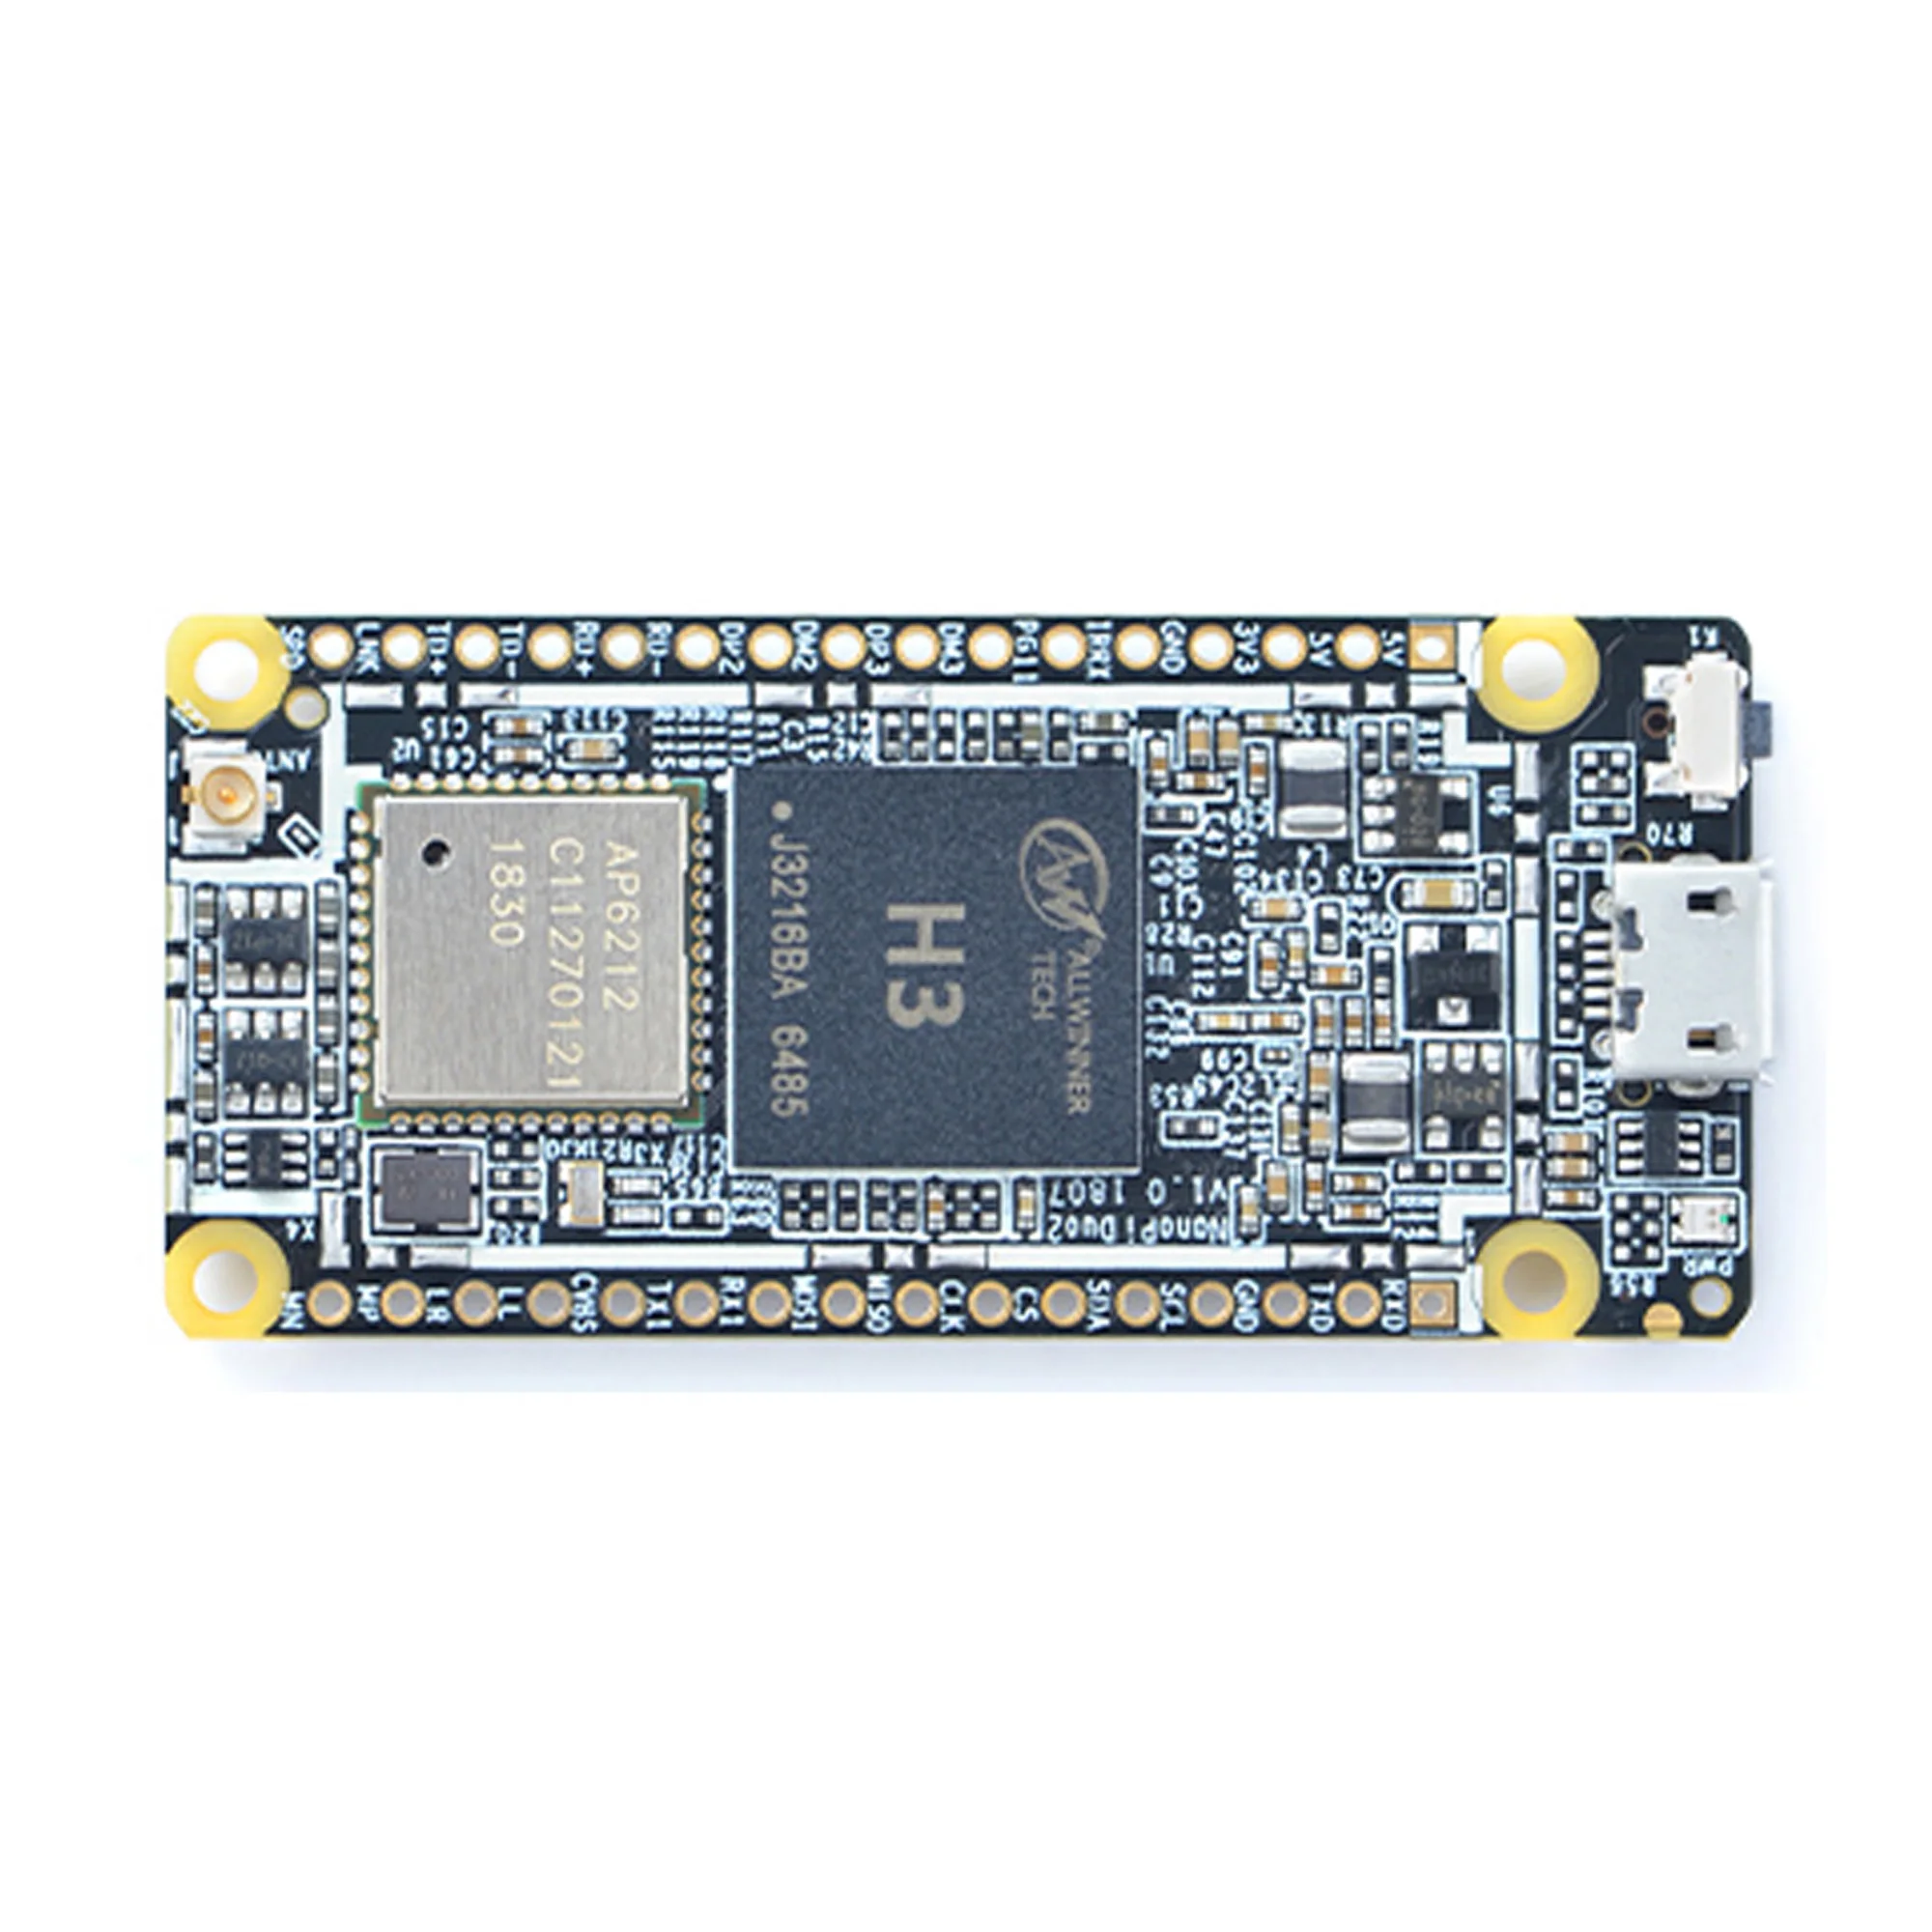 Friendly Nanopi DUO2 Ontwikkeld Board 512M Allwinner H3 Cortex-A7 Wifi Bluetooth Module Ubuntucore Iot Toepassingen